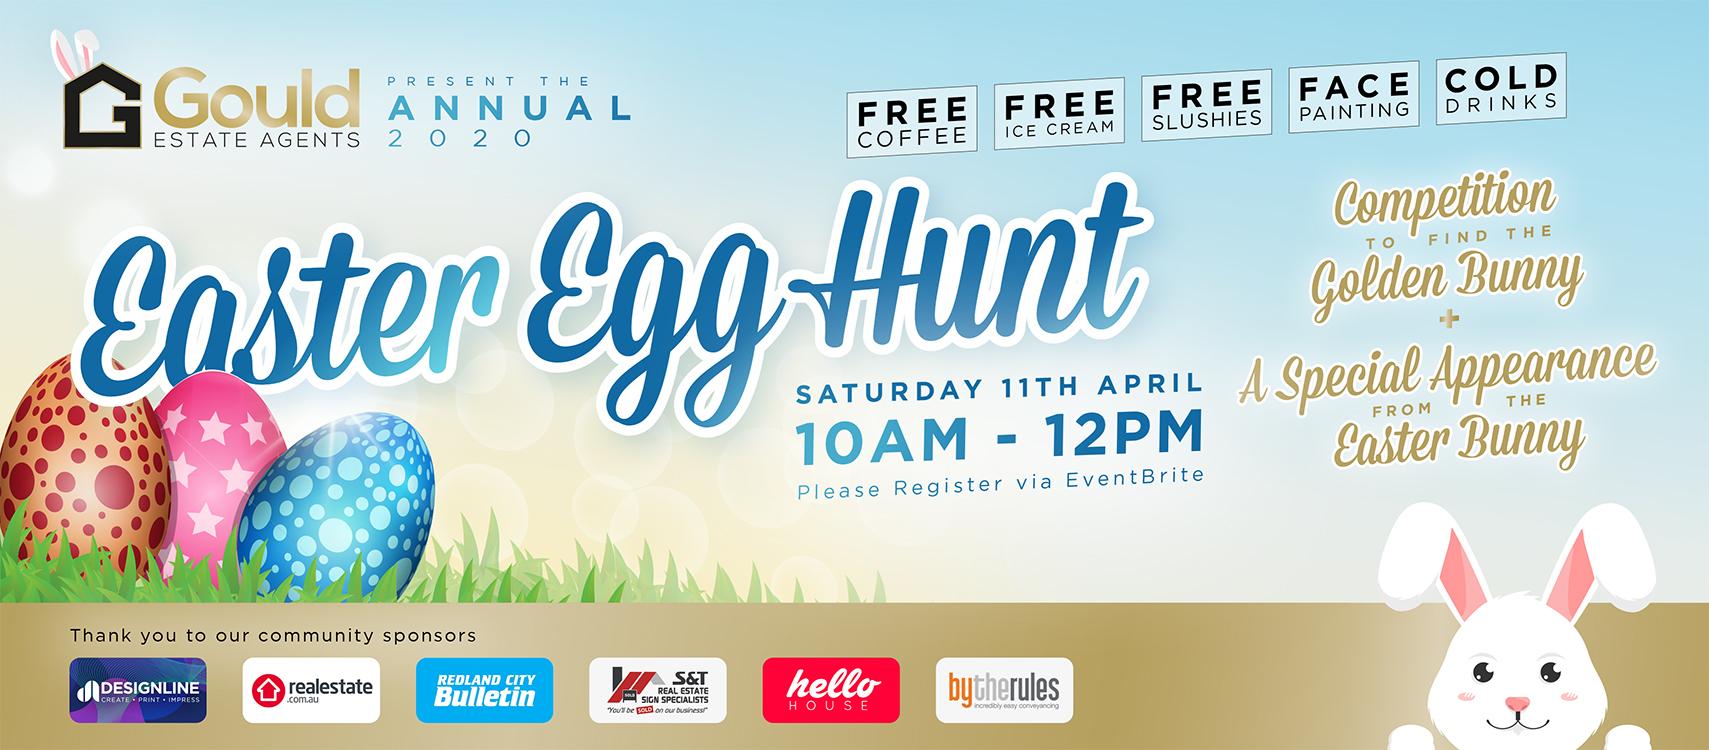 Gould Estate Agents Annual Easter Egg Hunt 2020